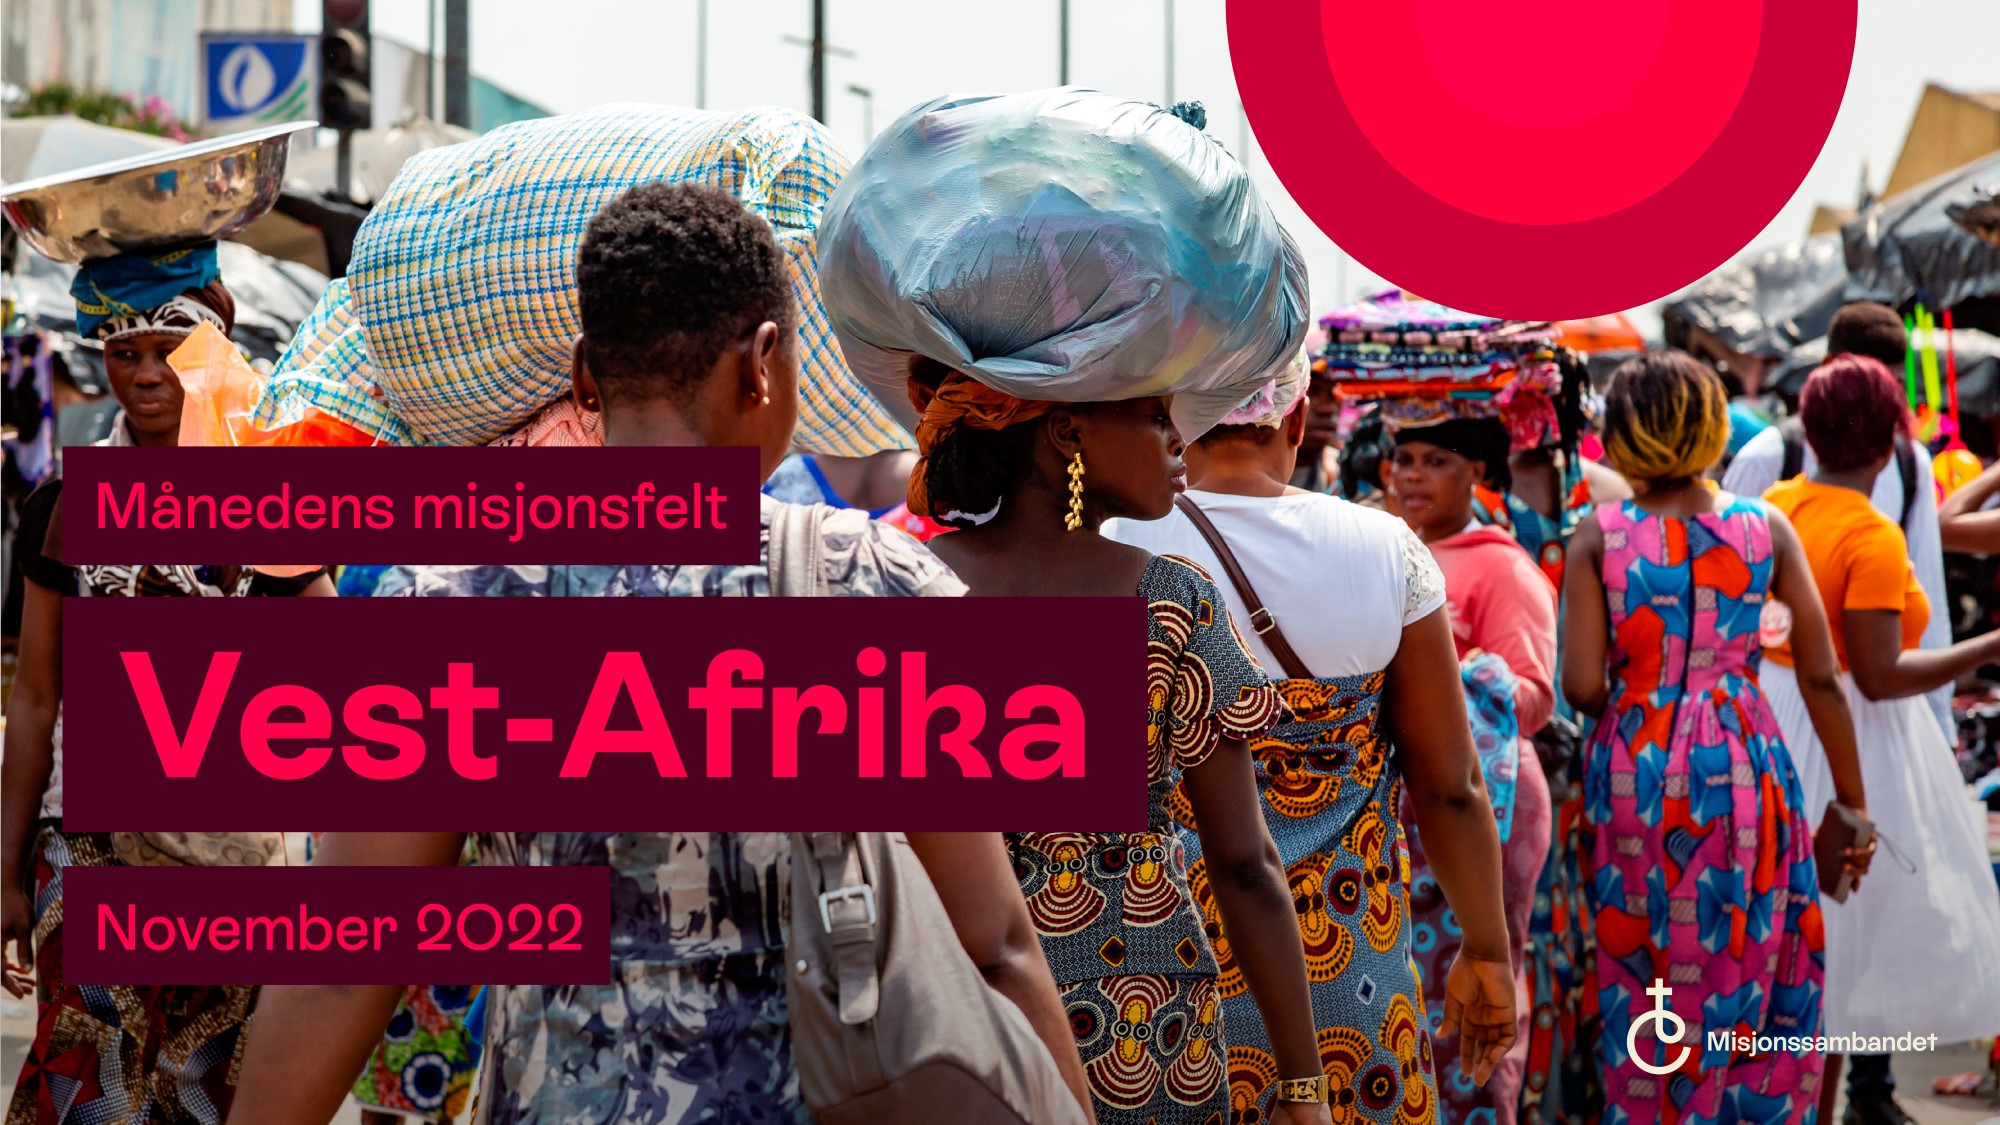 Tekstplakat månedens misjonsfelt november 2022 Vest-Afrika. Bakgrunnsbilde av kvinner på marked